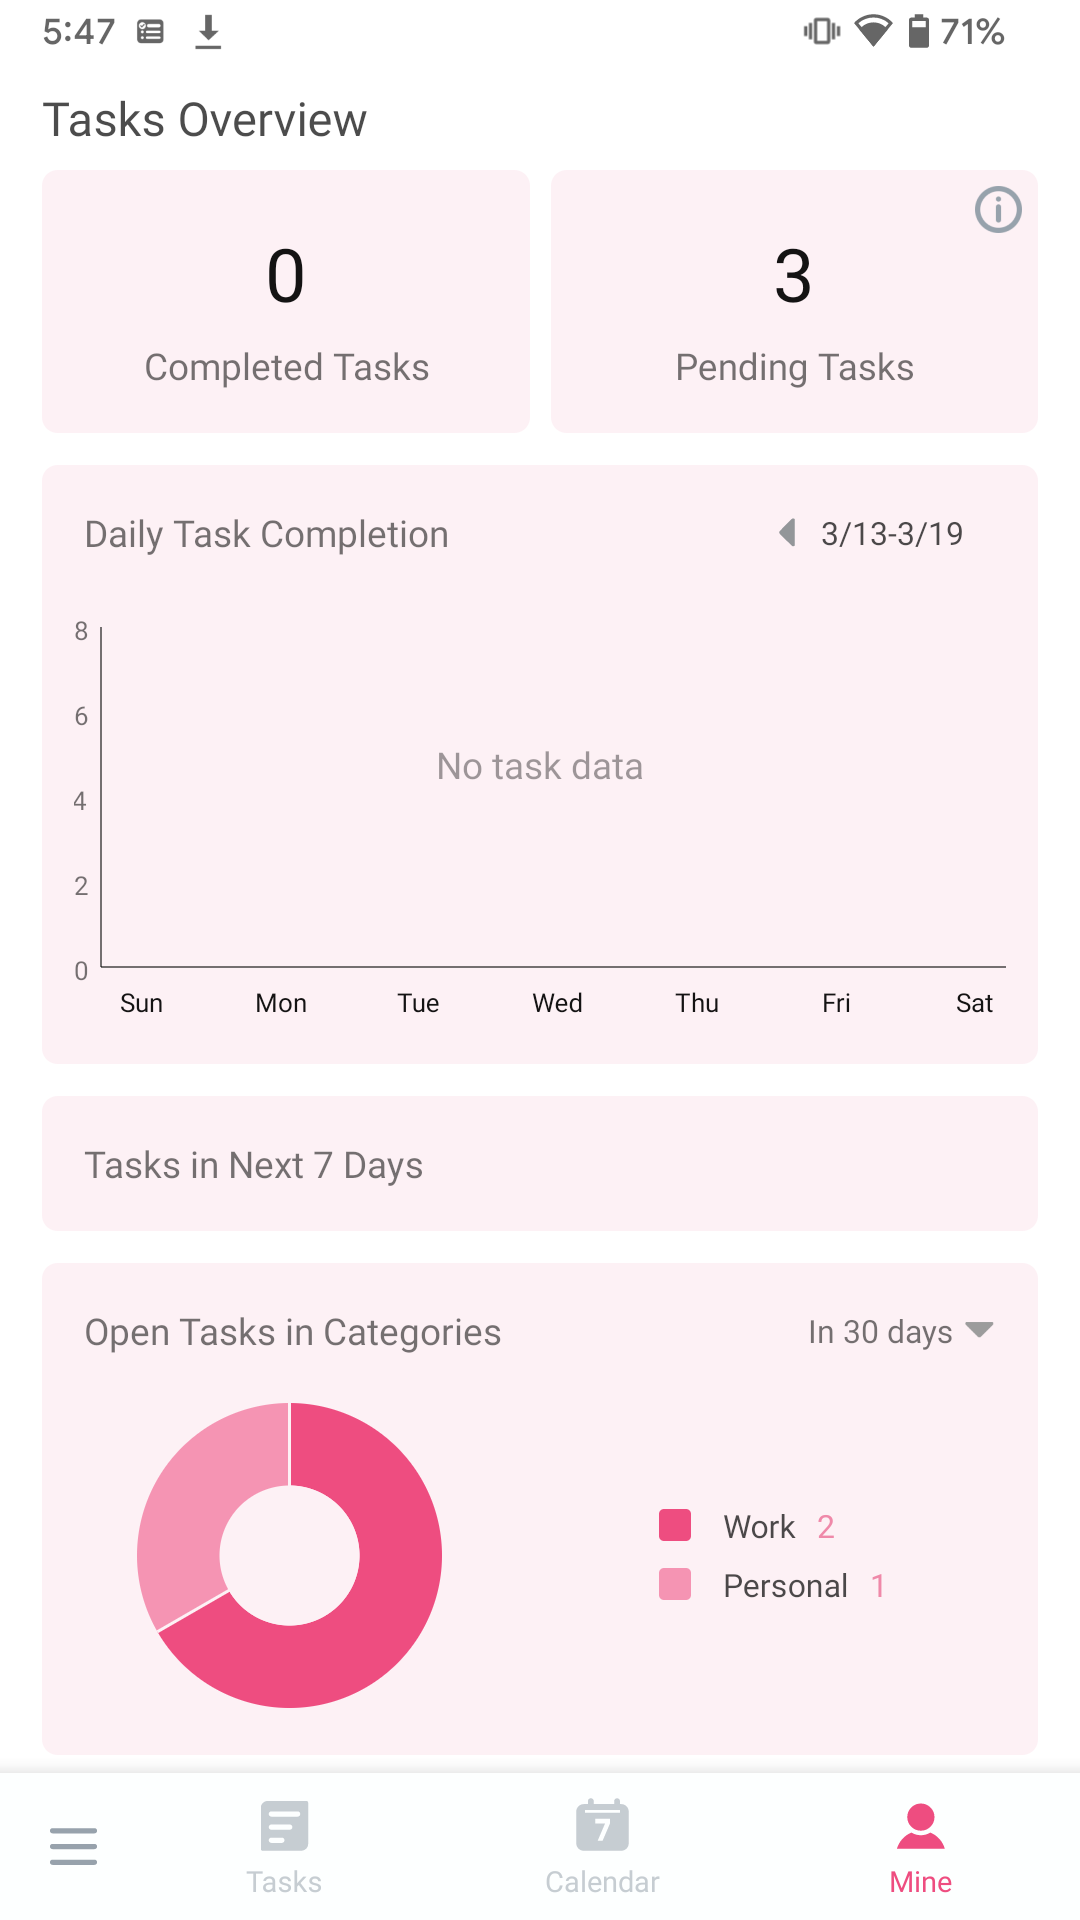 Completed tasks statistics